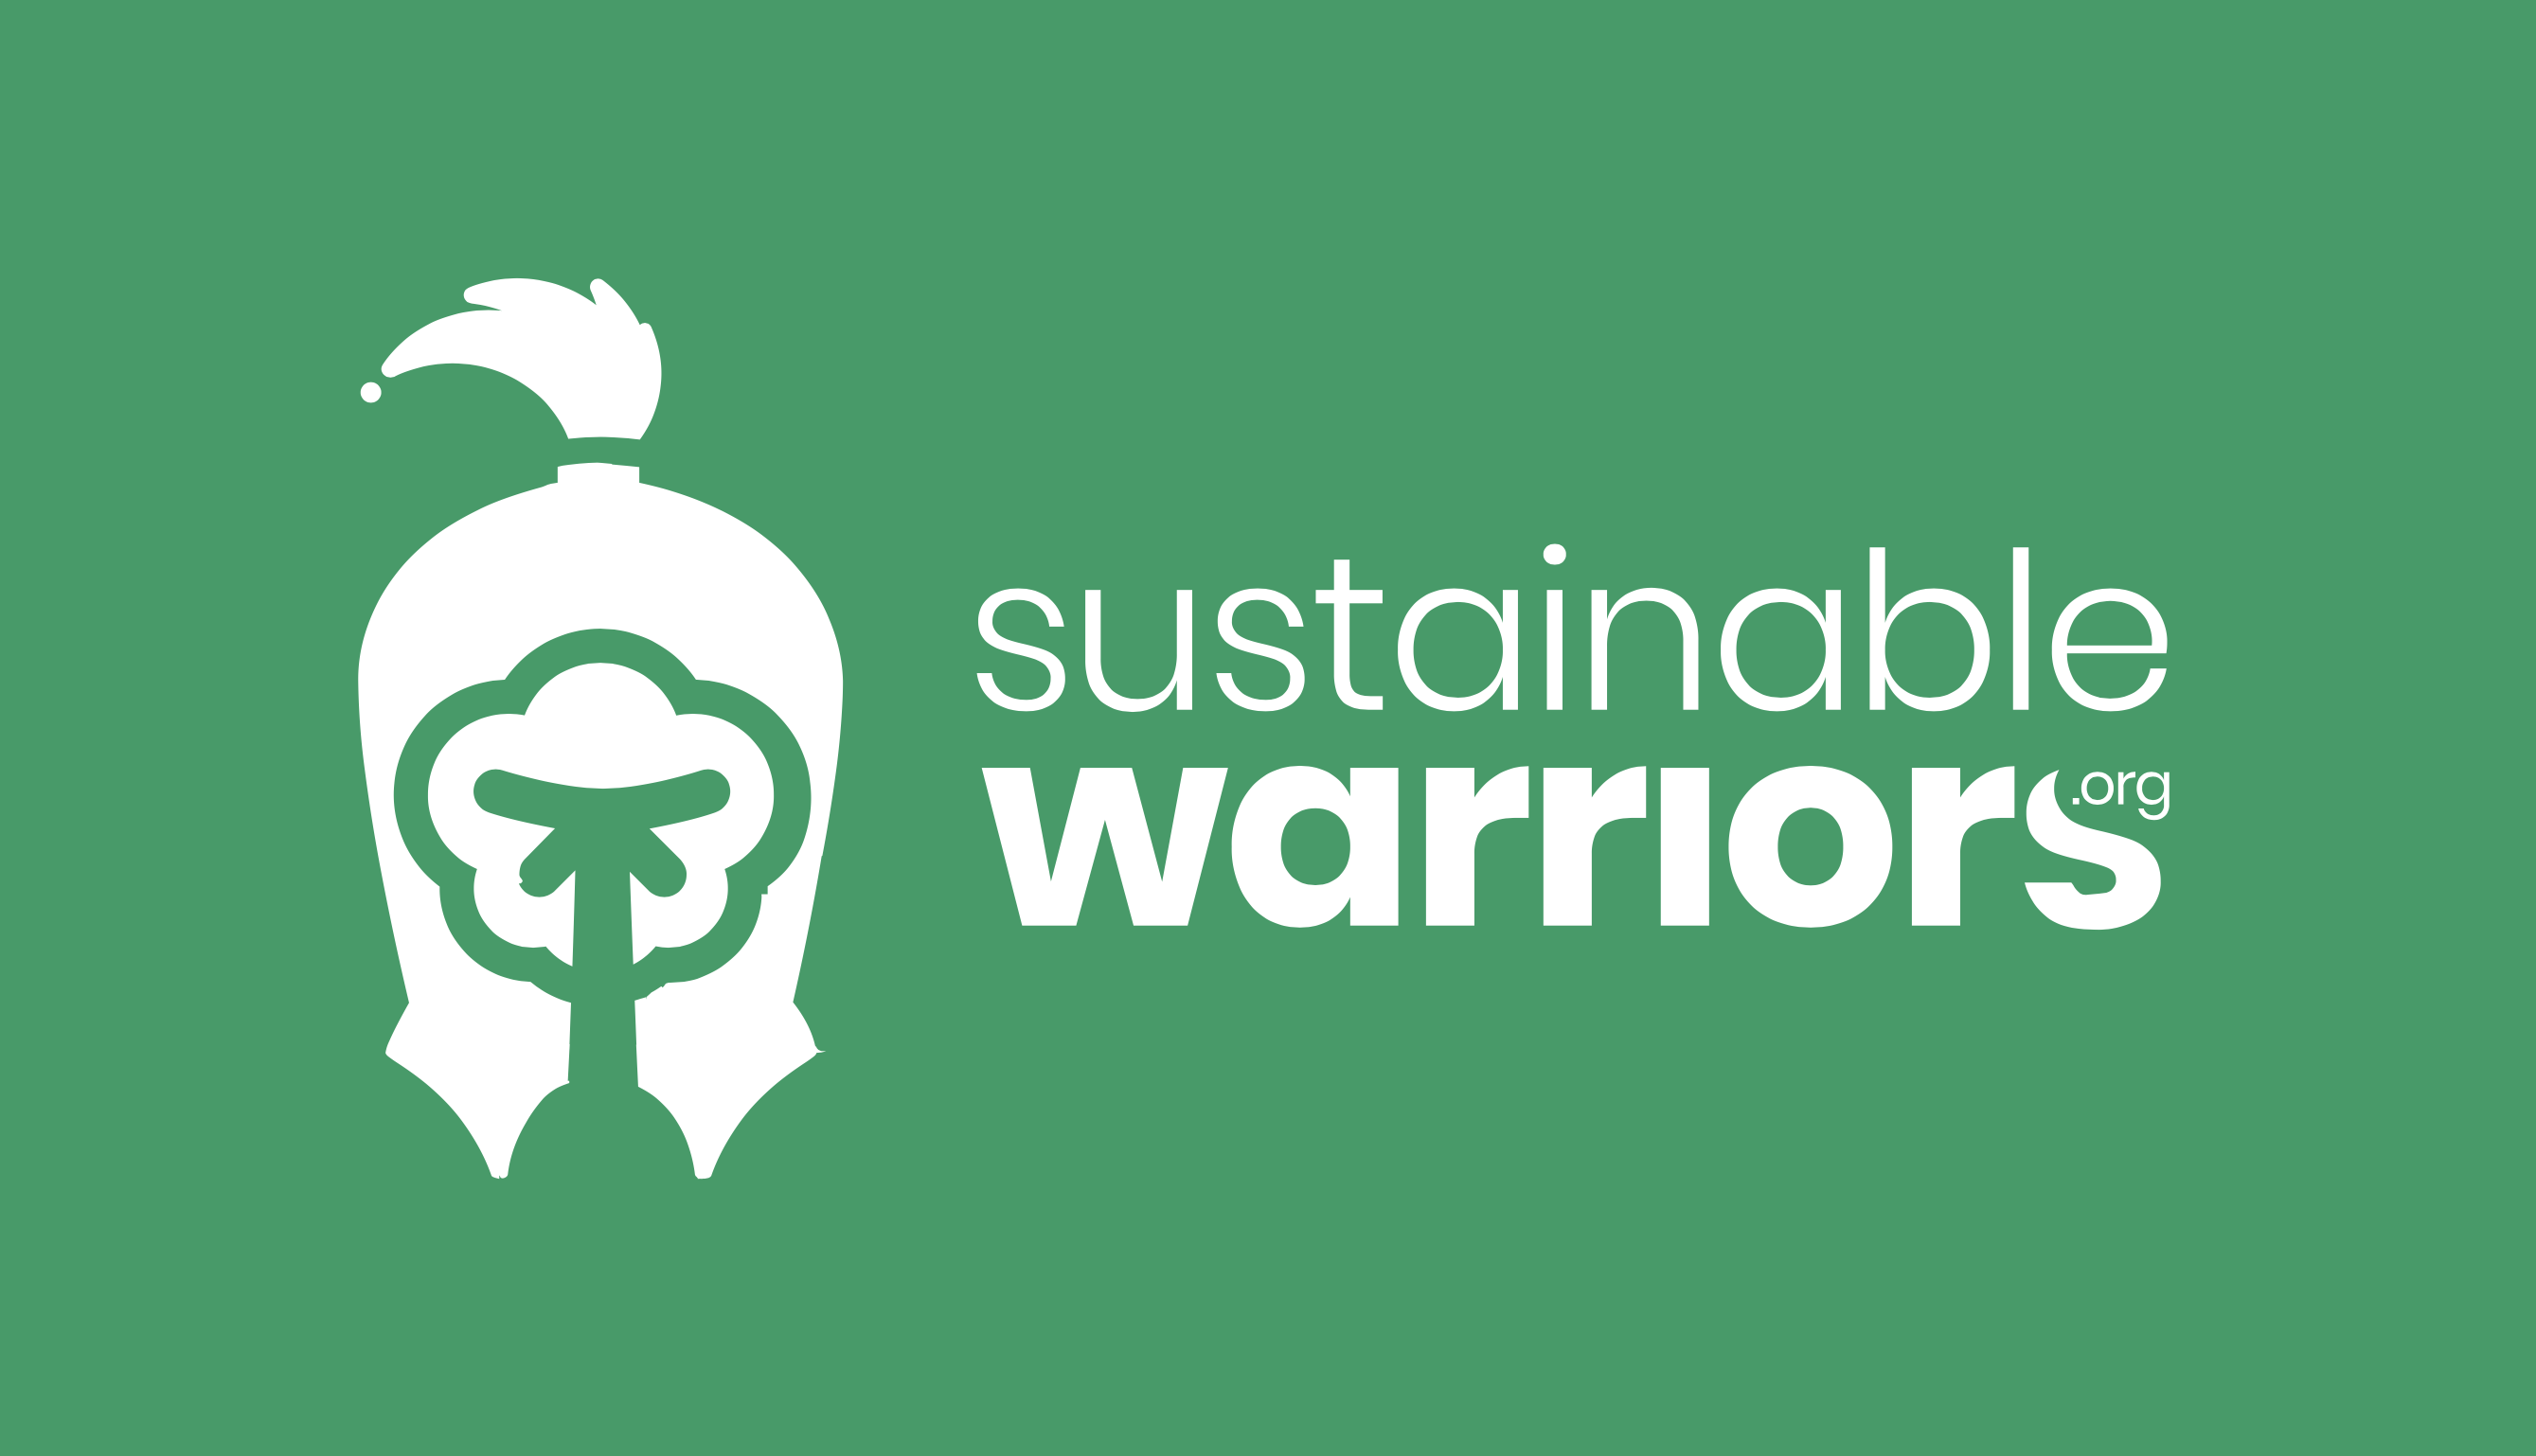 Sustainable warriors